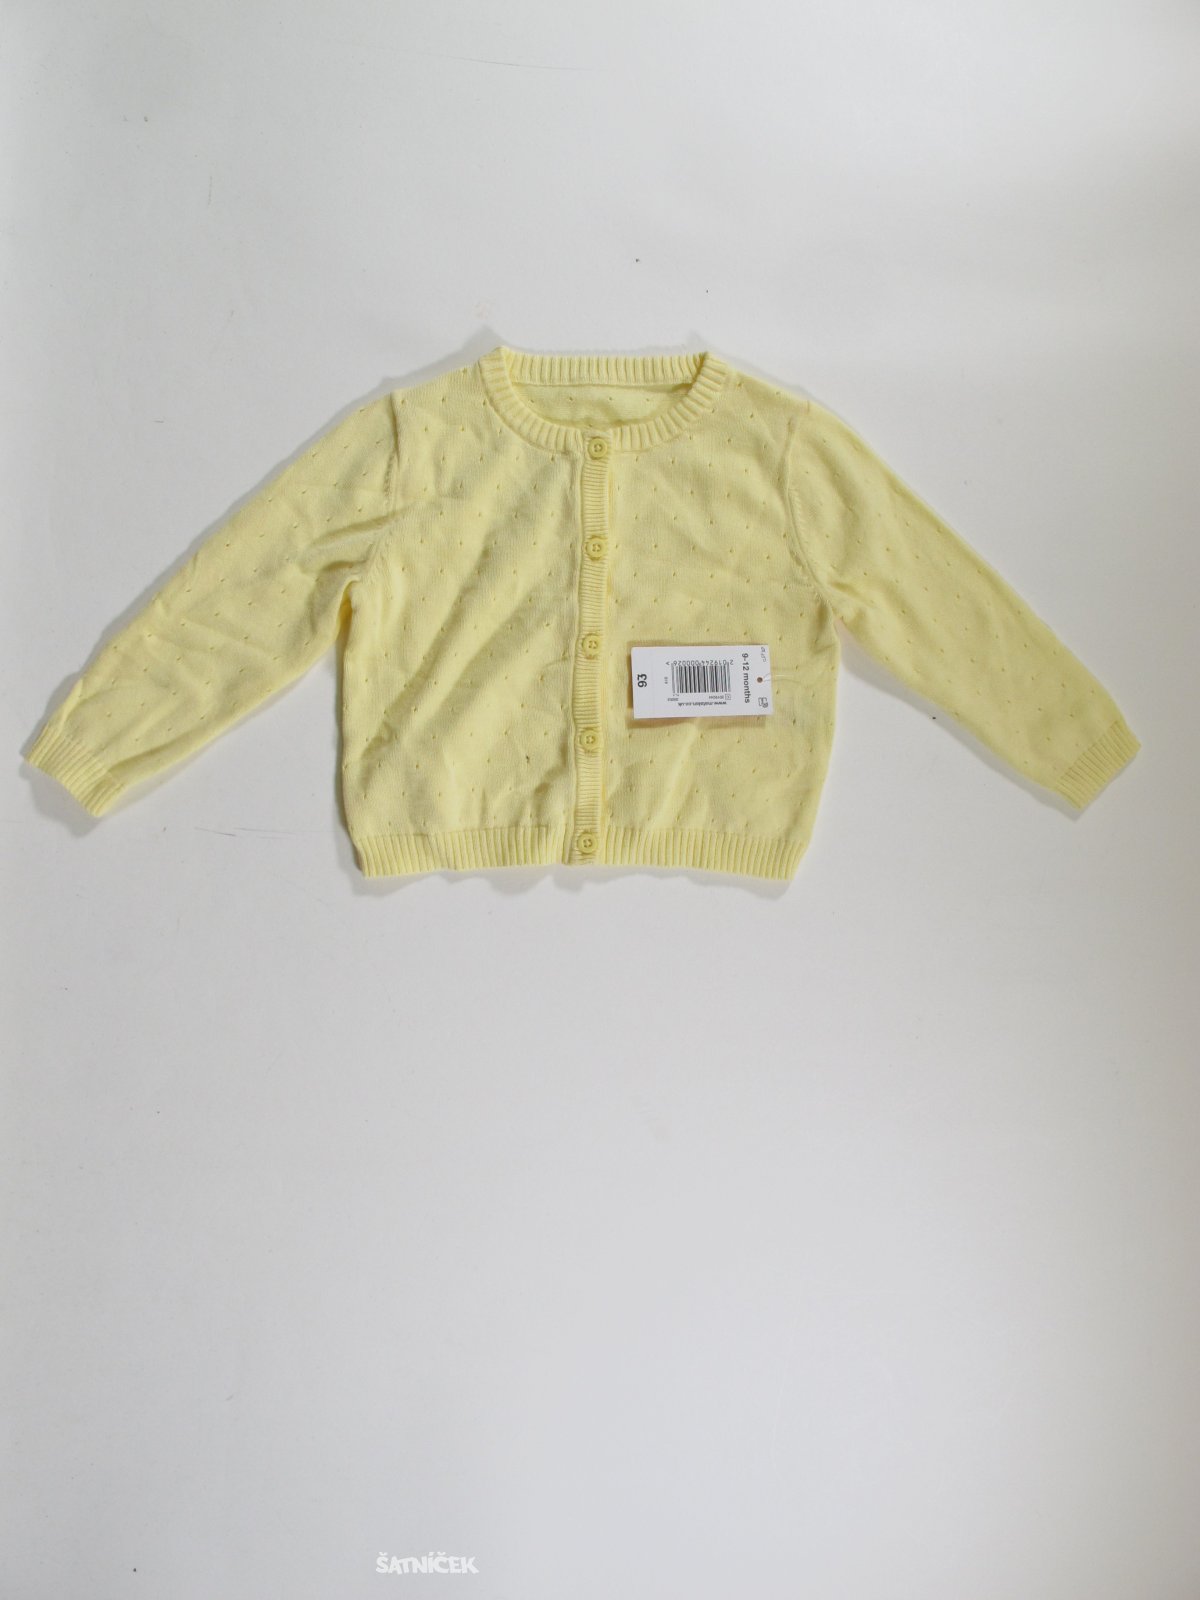 Žlutý svetr pro holky outlet 